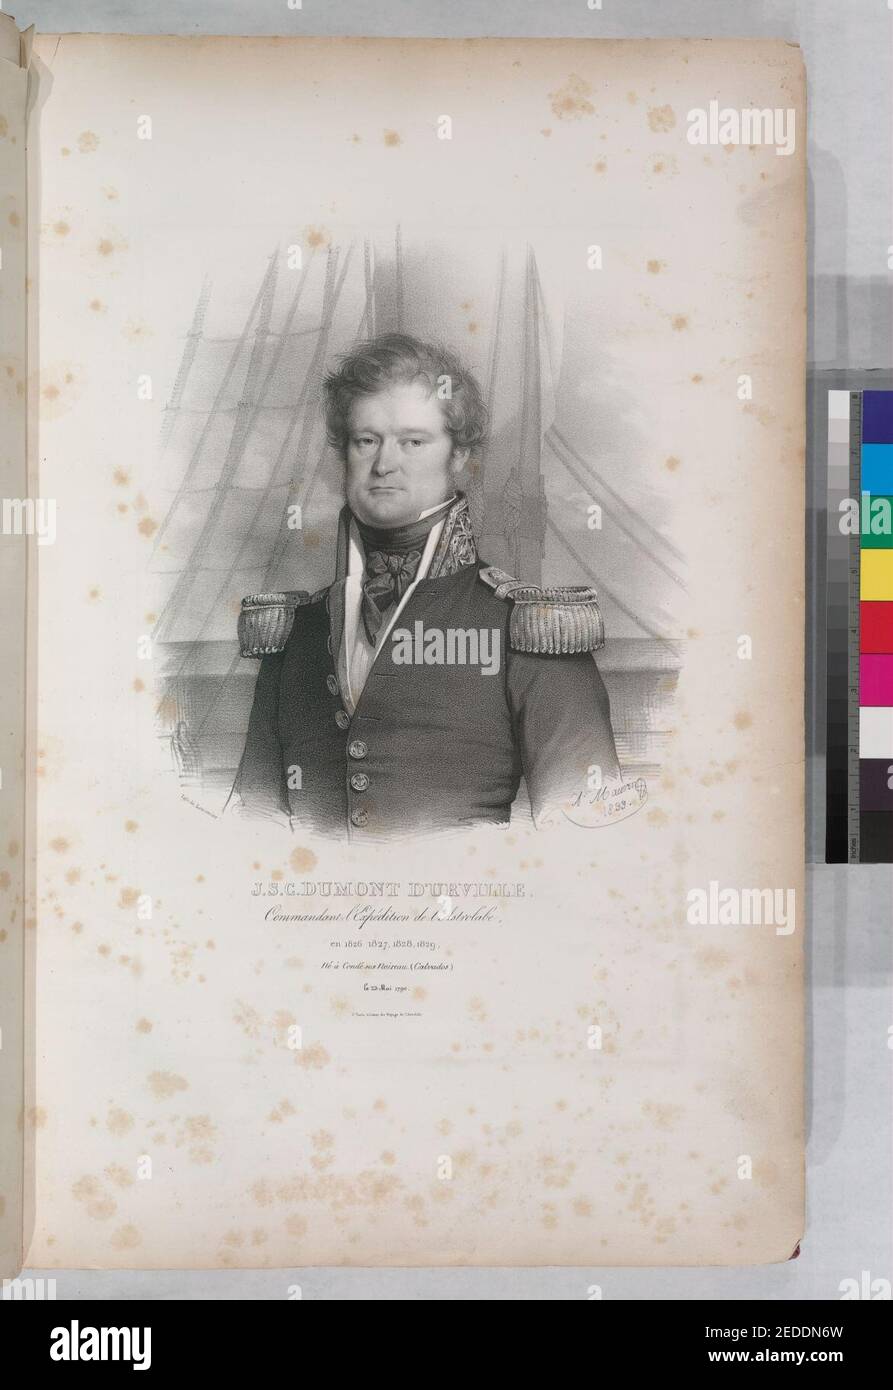 J.C. Dumont d'Urville.- Commandant de l'expédition de l'Astrolabe, en 1826, 1827, 1828, 1829, né á condé sui noireau. (Calvados.), PE 23 mai 1790 Banque D'Images